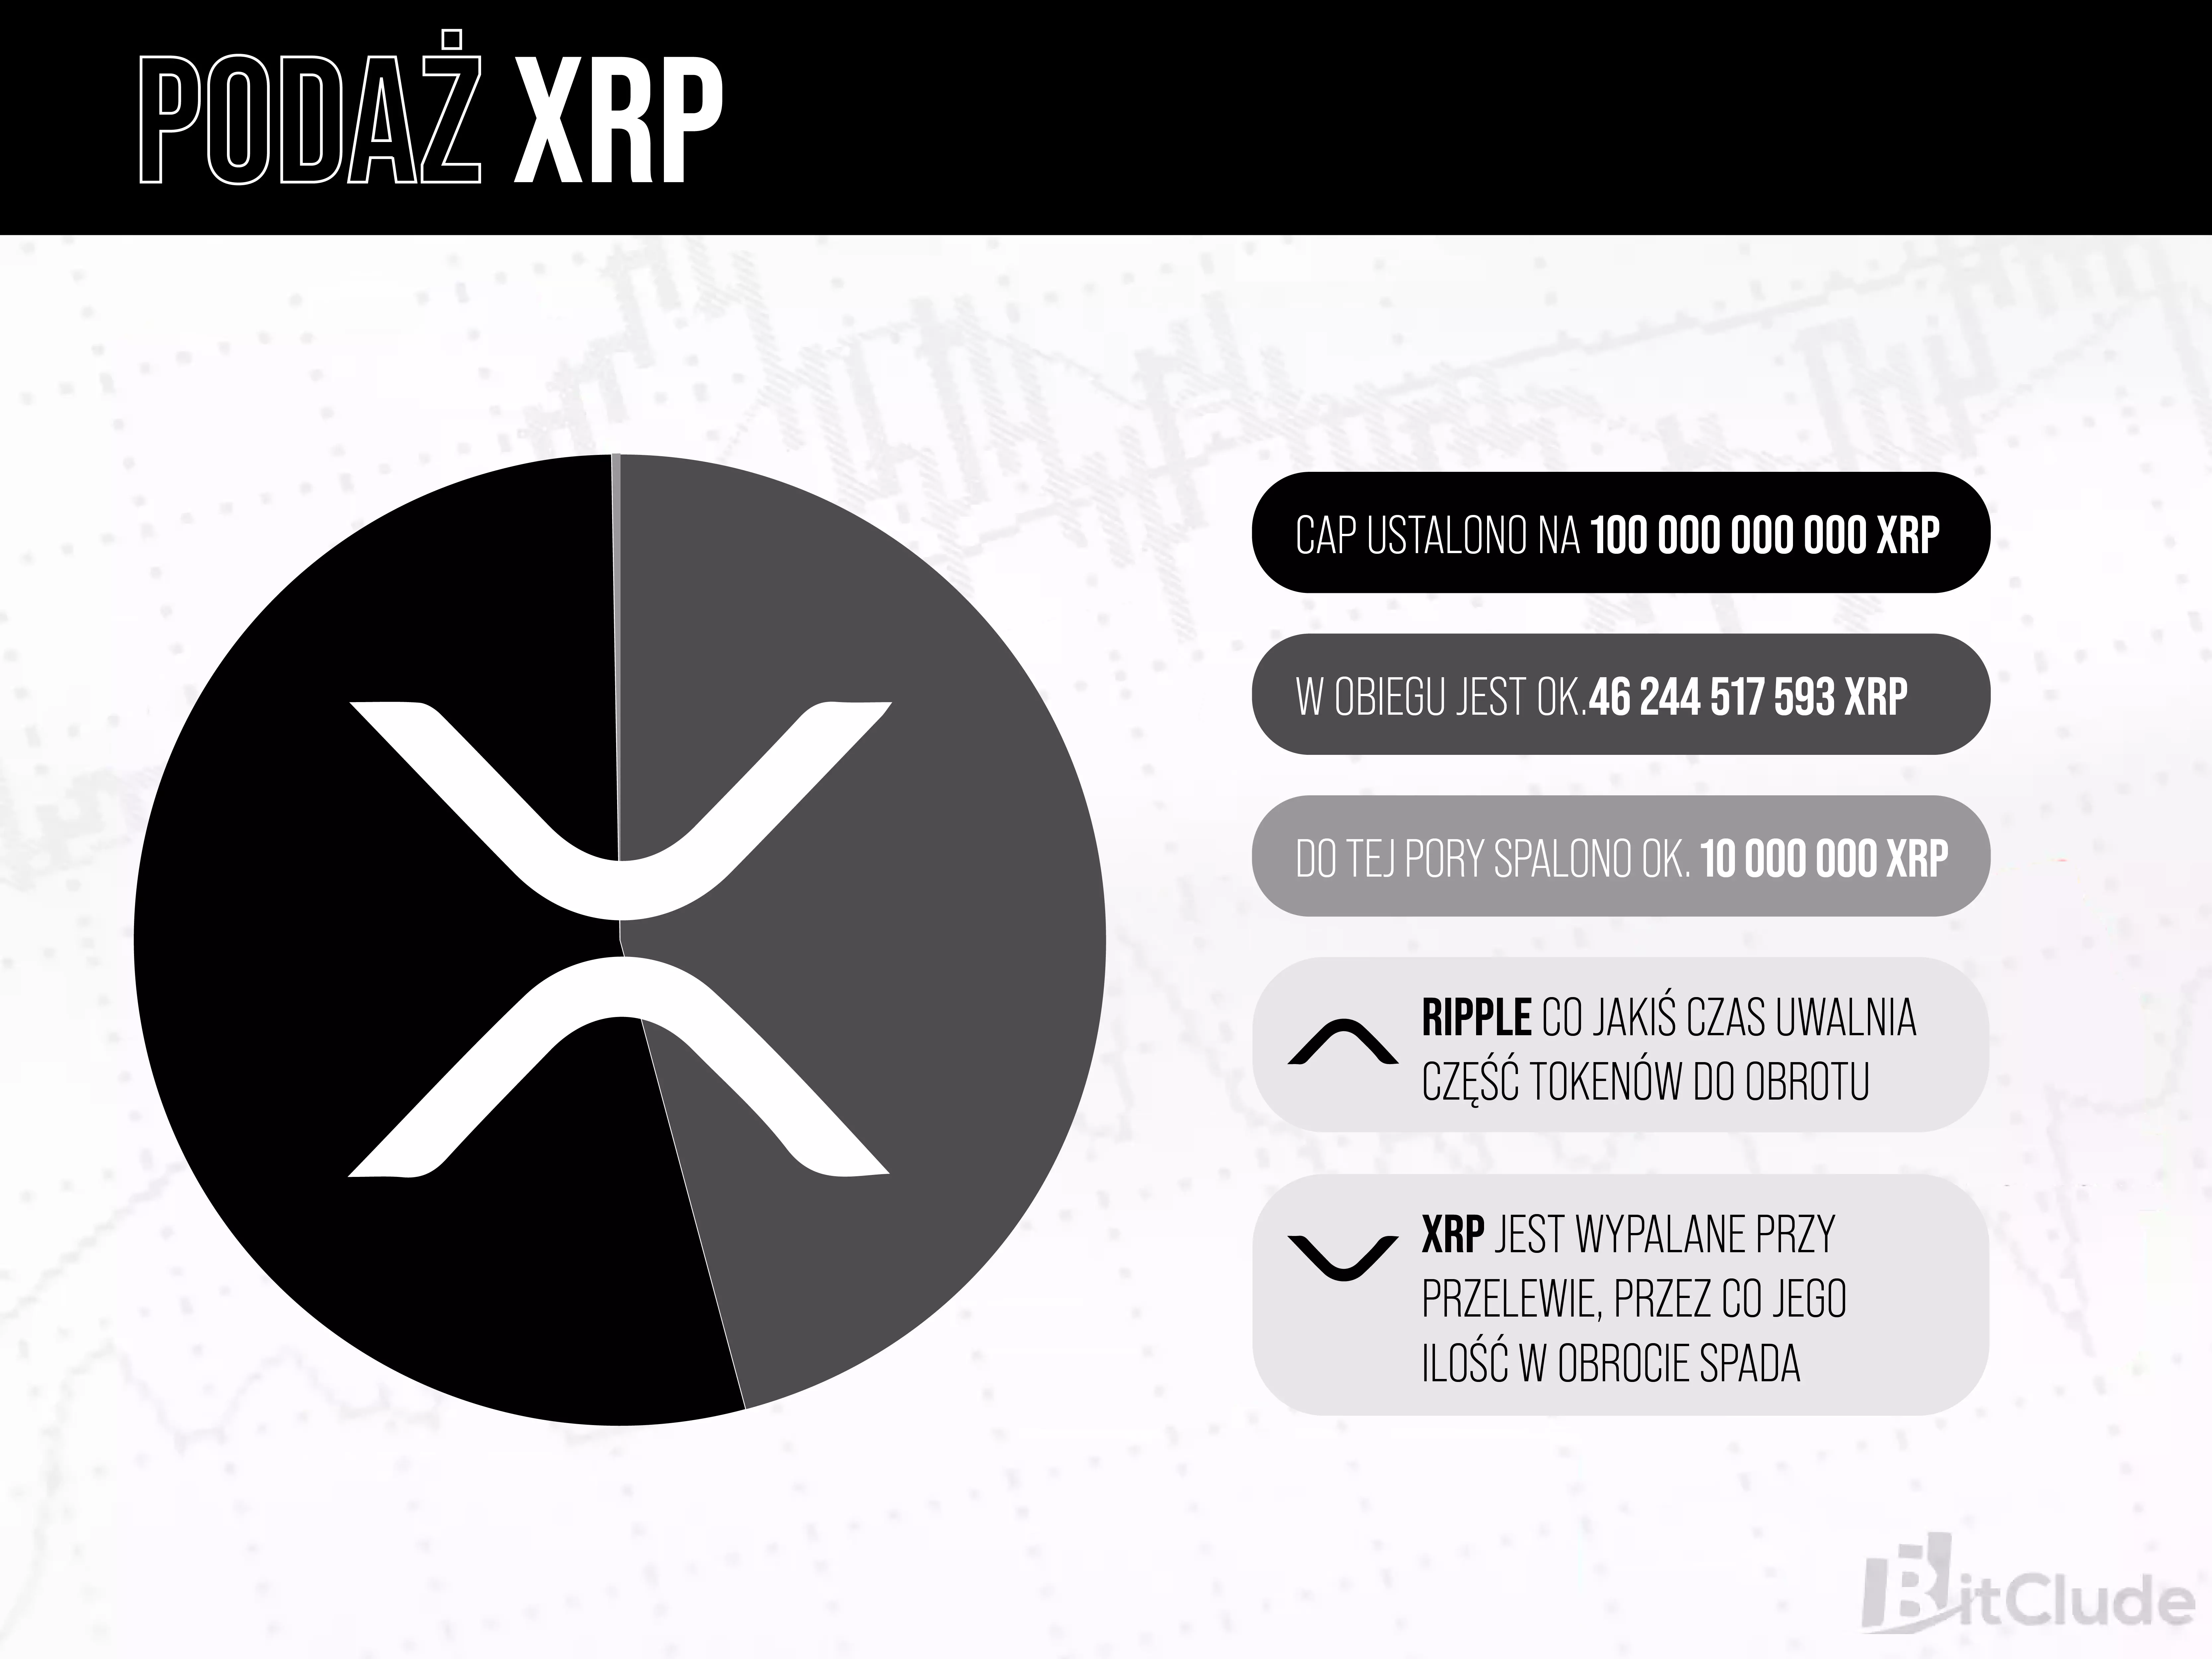 Podaż XRP - granica podaży została ustalona na 100 000 000 000 XRP.